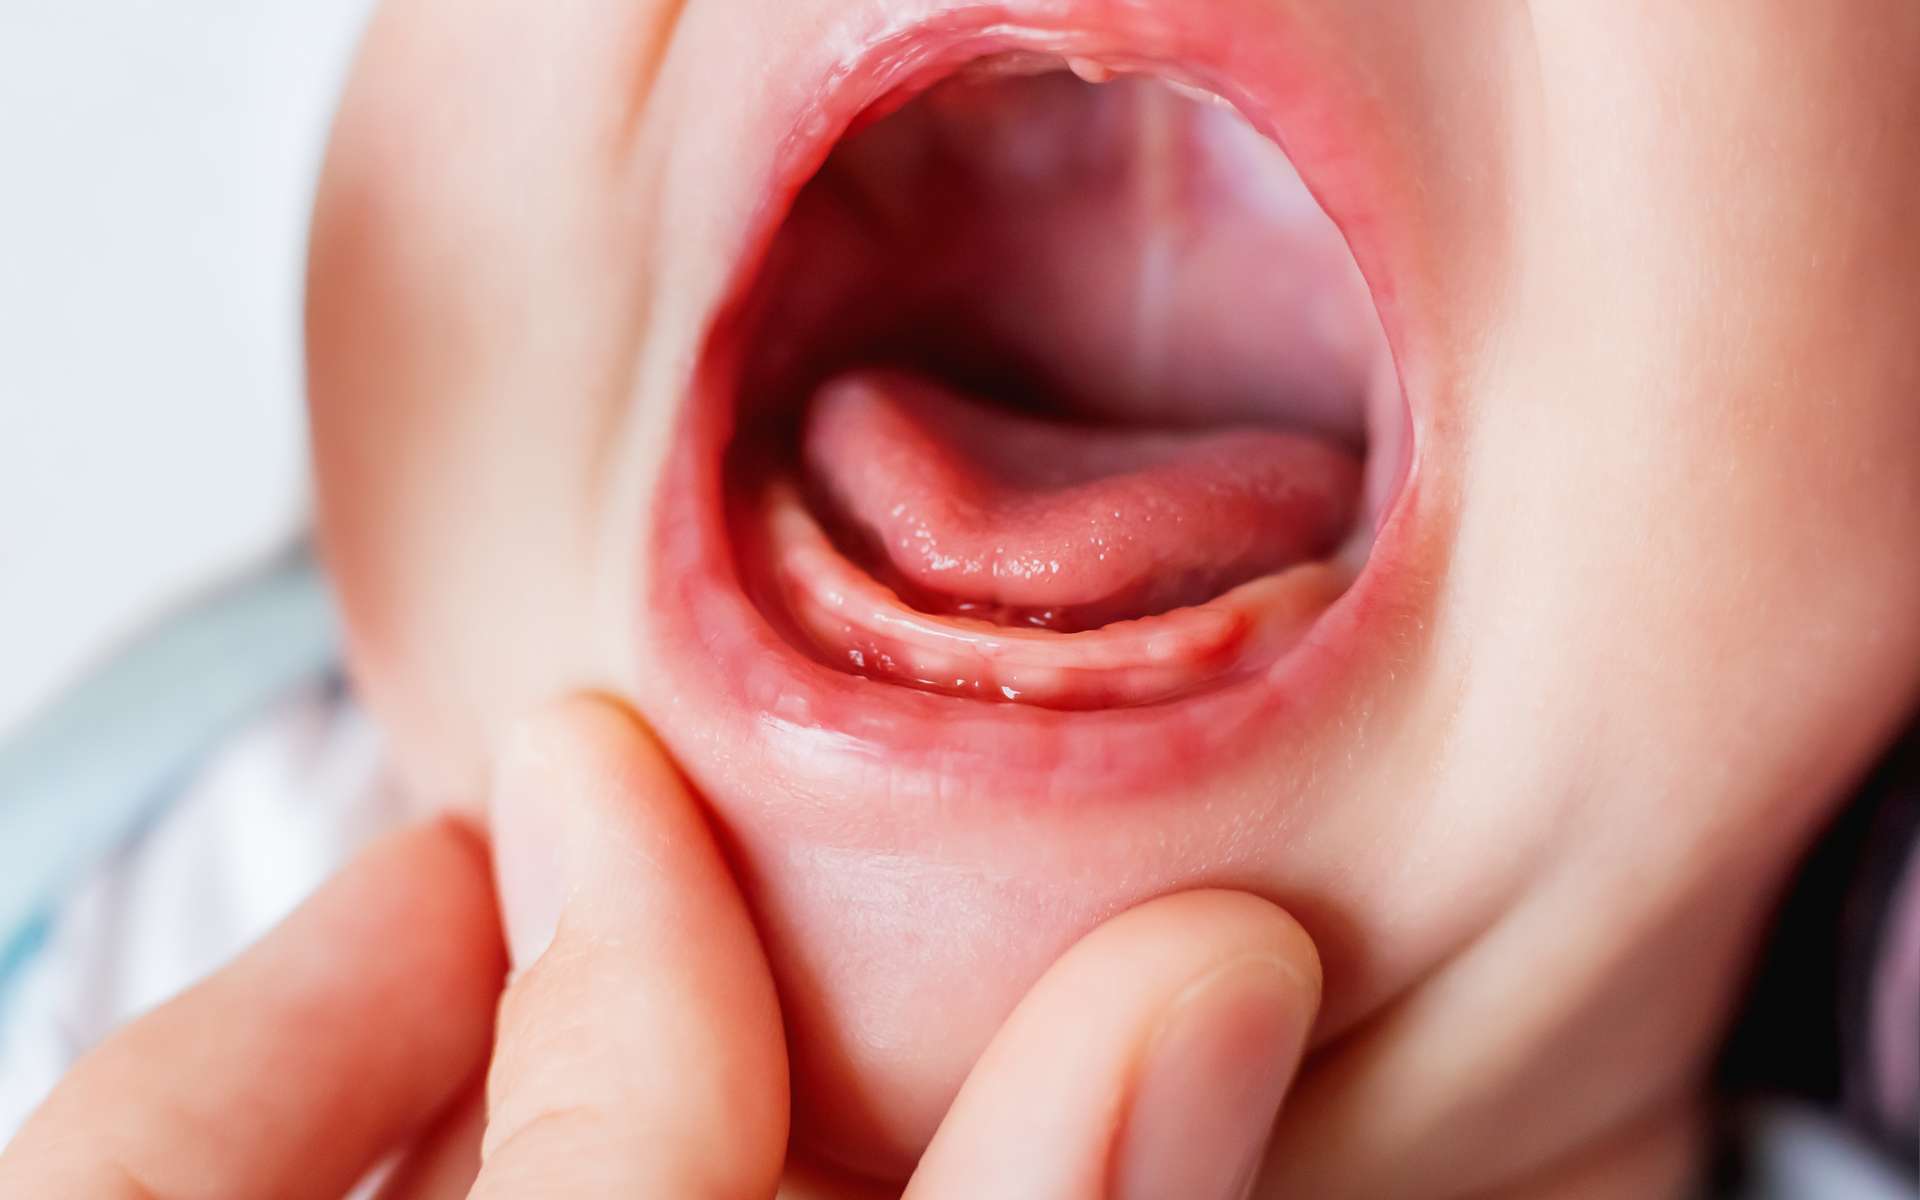 Pourquoi diagnostiquer tôt le frein de langue est-il si important pour le développement du bébé ? © kittyfly, Adobe Stock